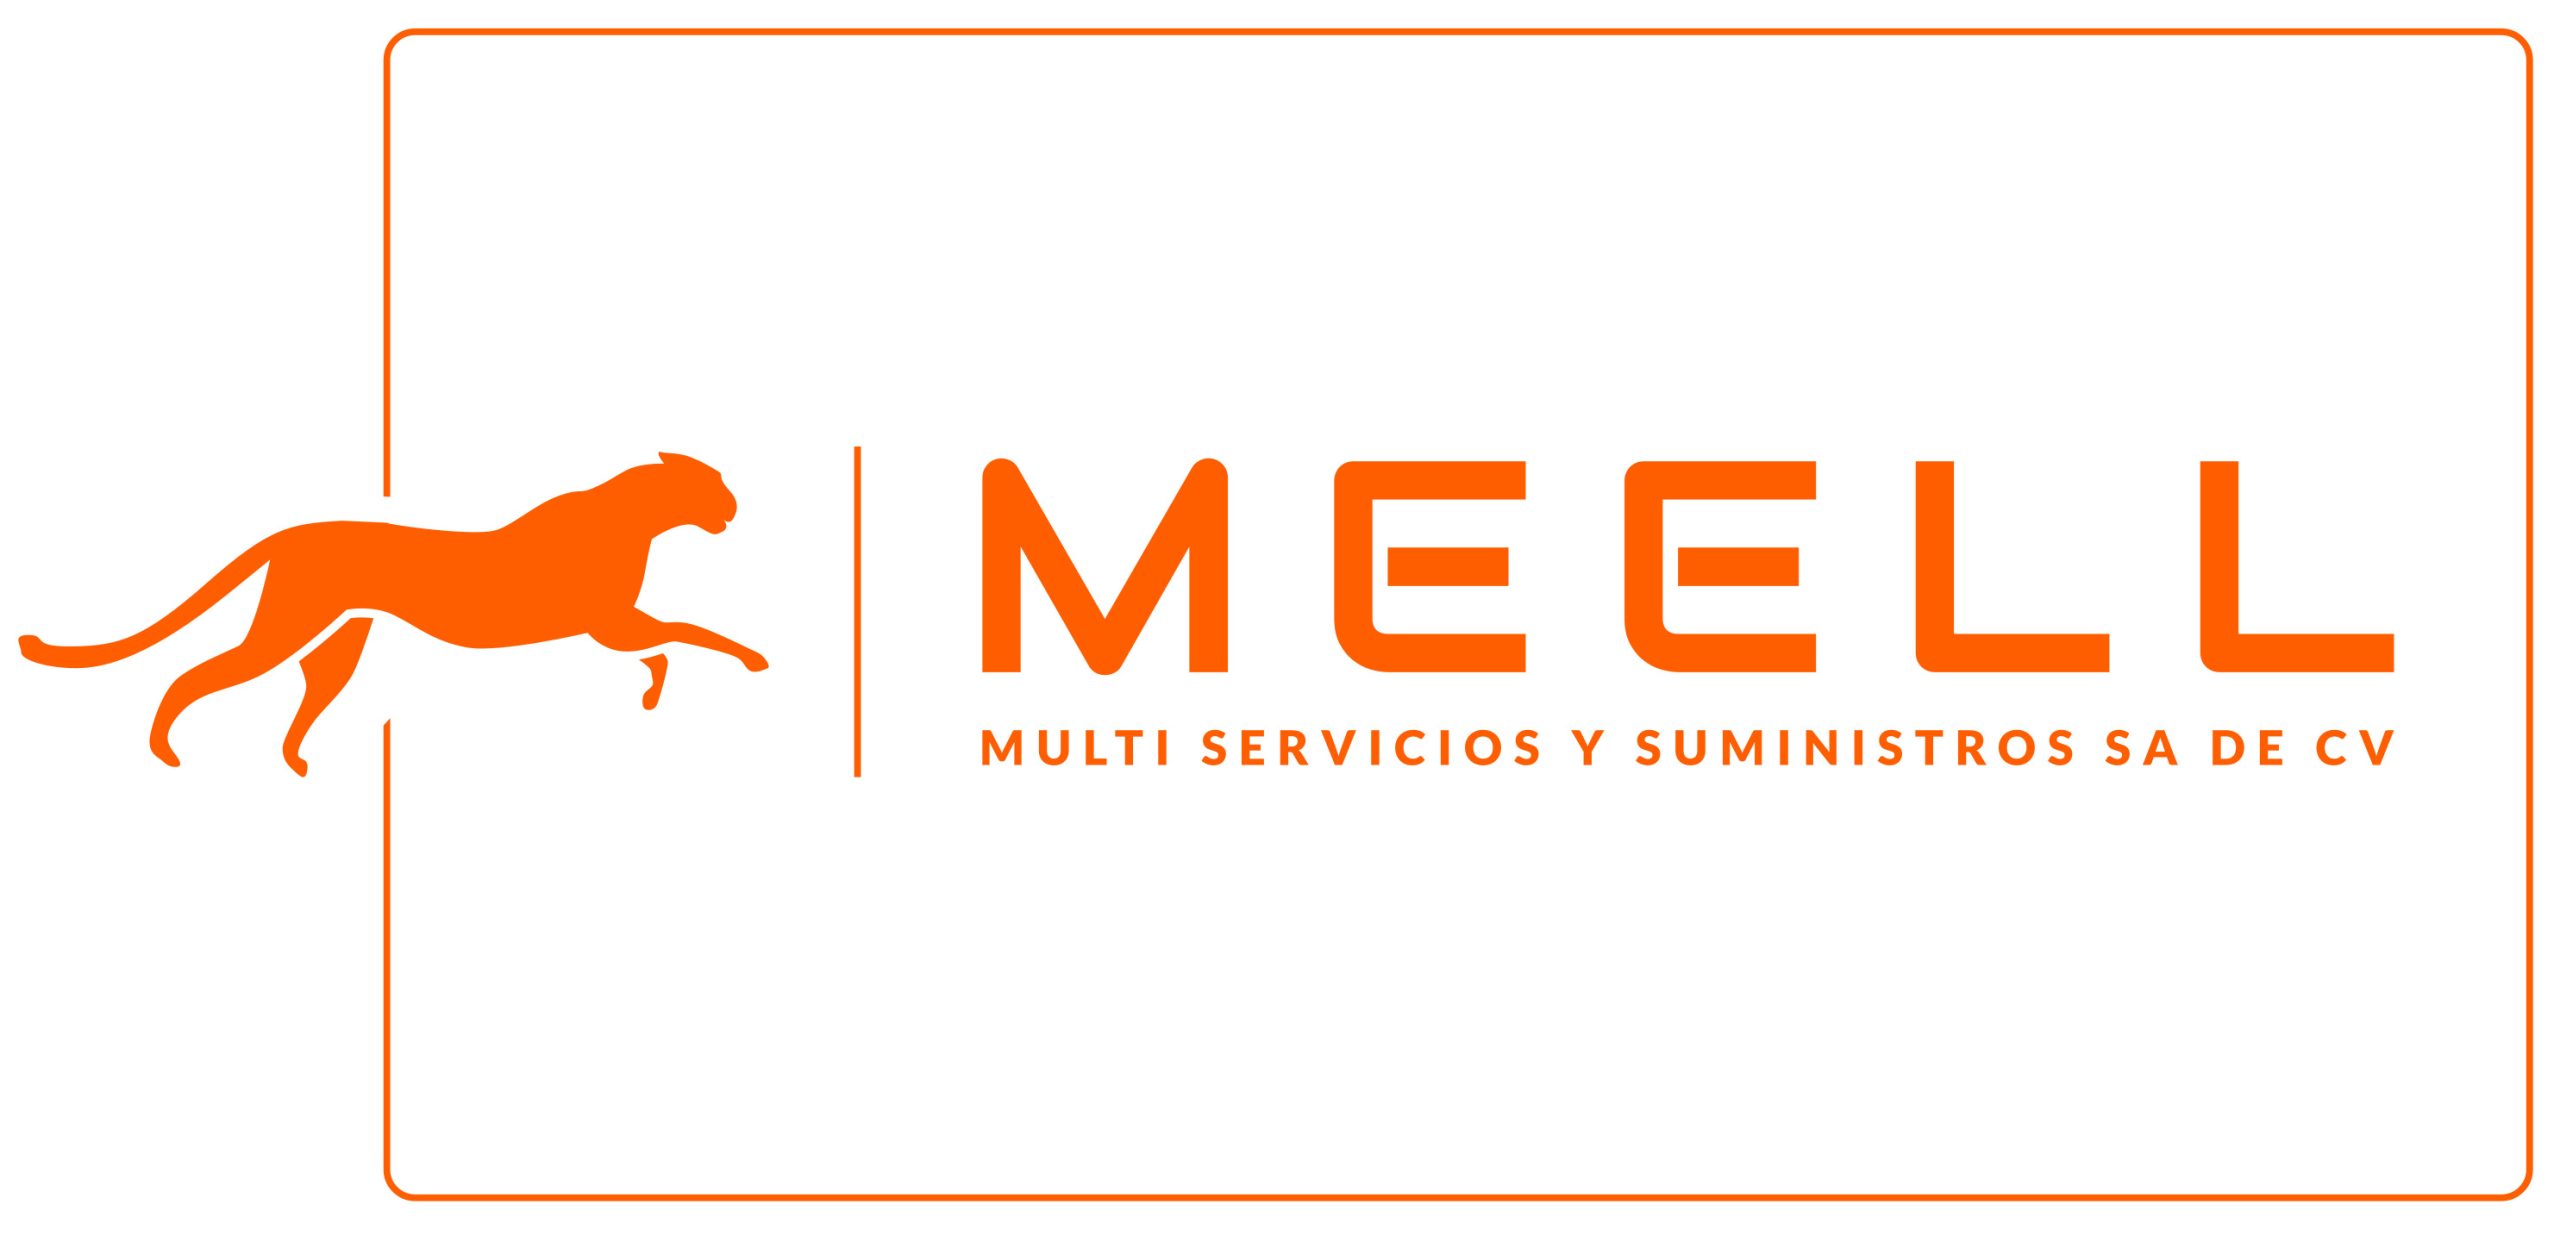 Multi Servicios y Suministros MEELL Logo